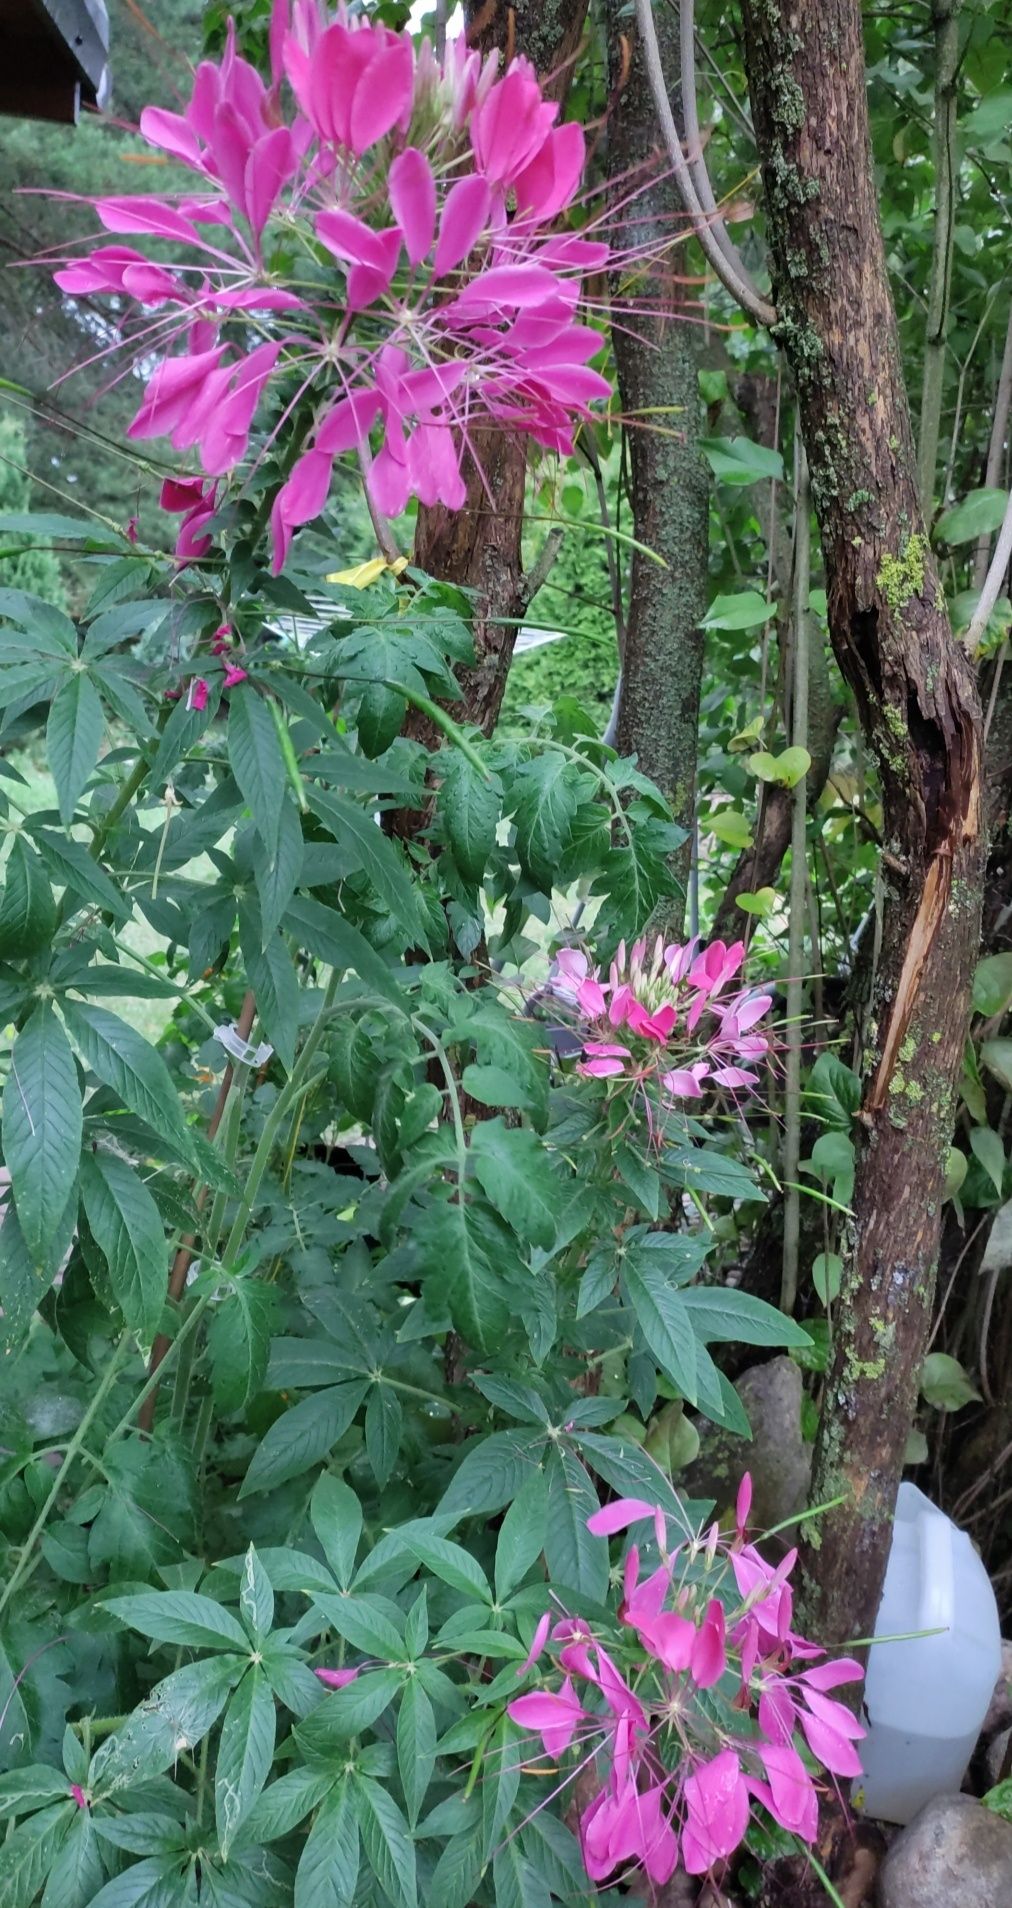 Rudbekia i inne kwiaty nasiona kolekcjonerskie